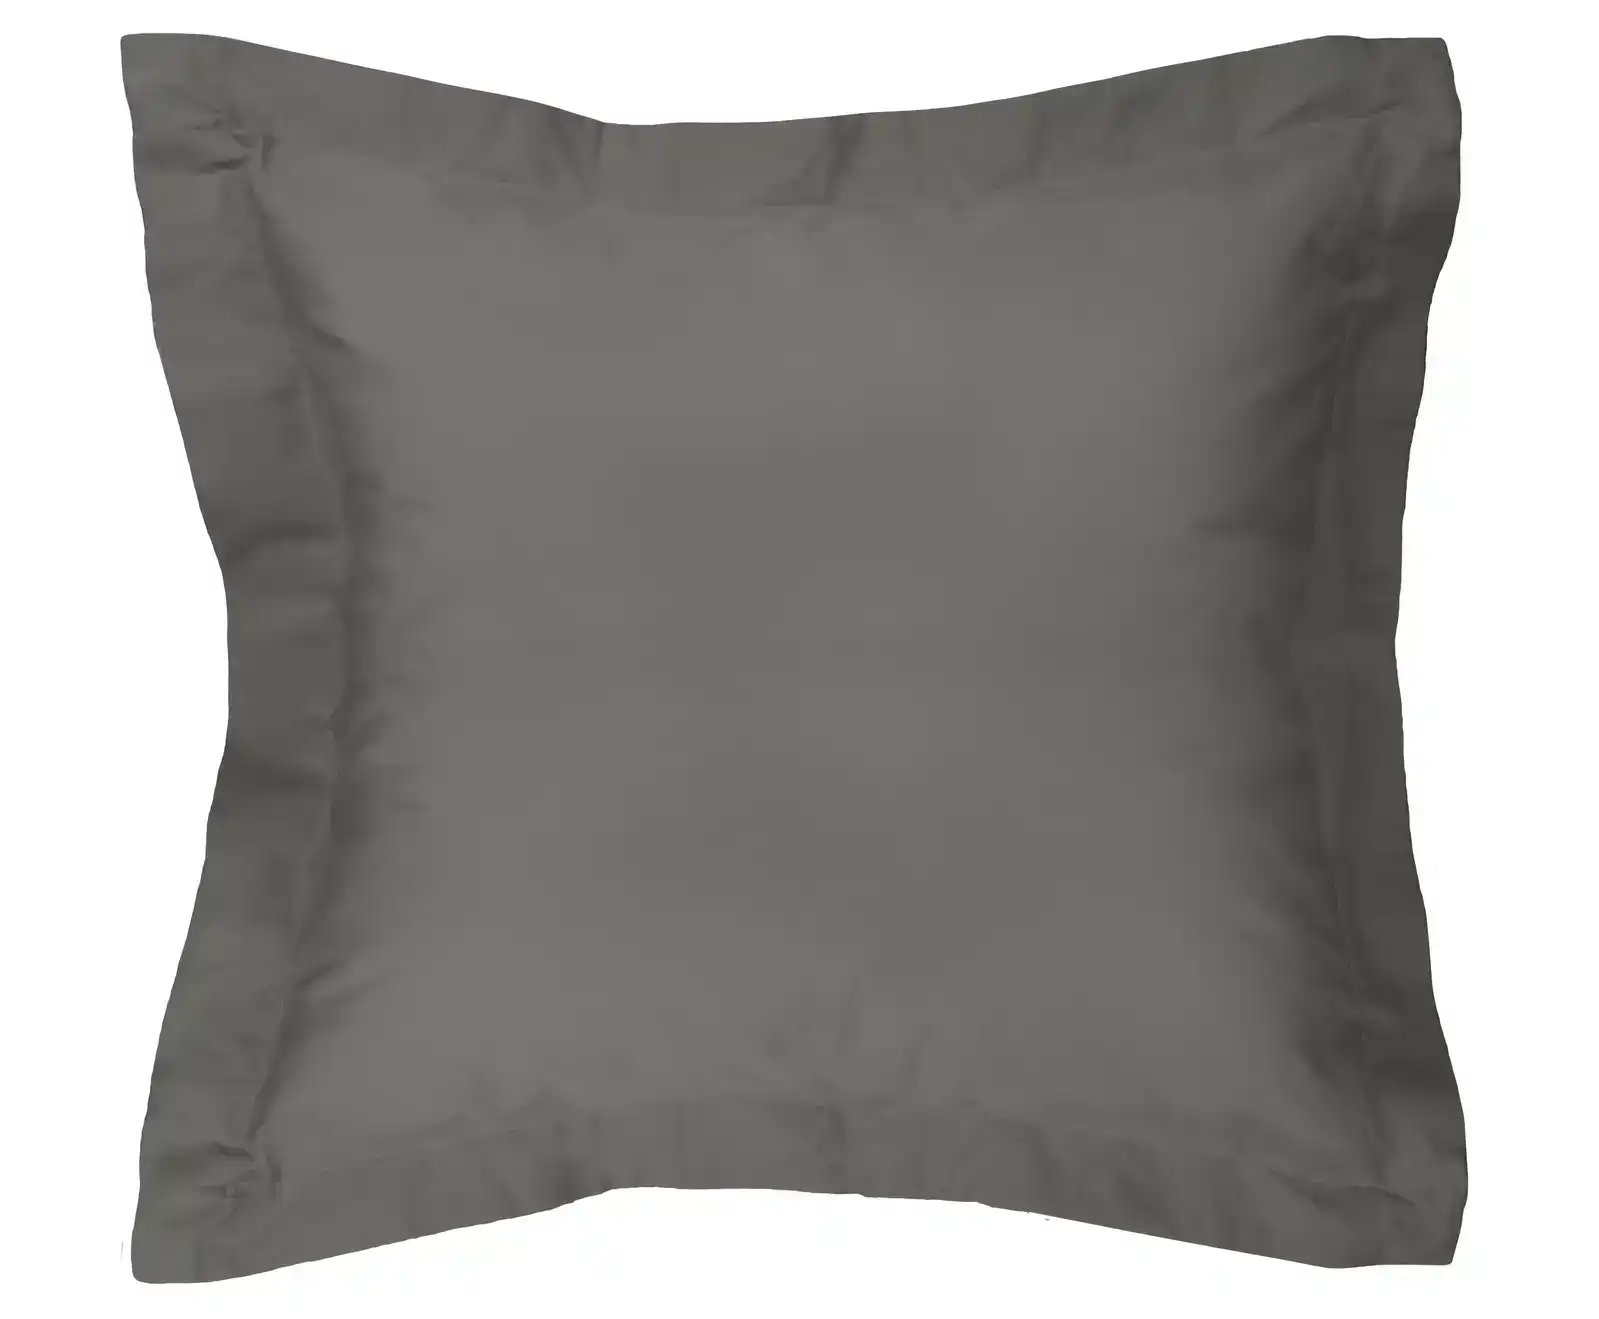 Ardor 300TC Cotton Euro Pillowcase Soft Pillow Cover Case Home Bedding Charcoal